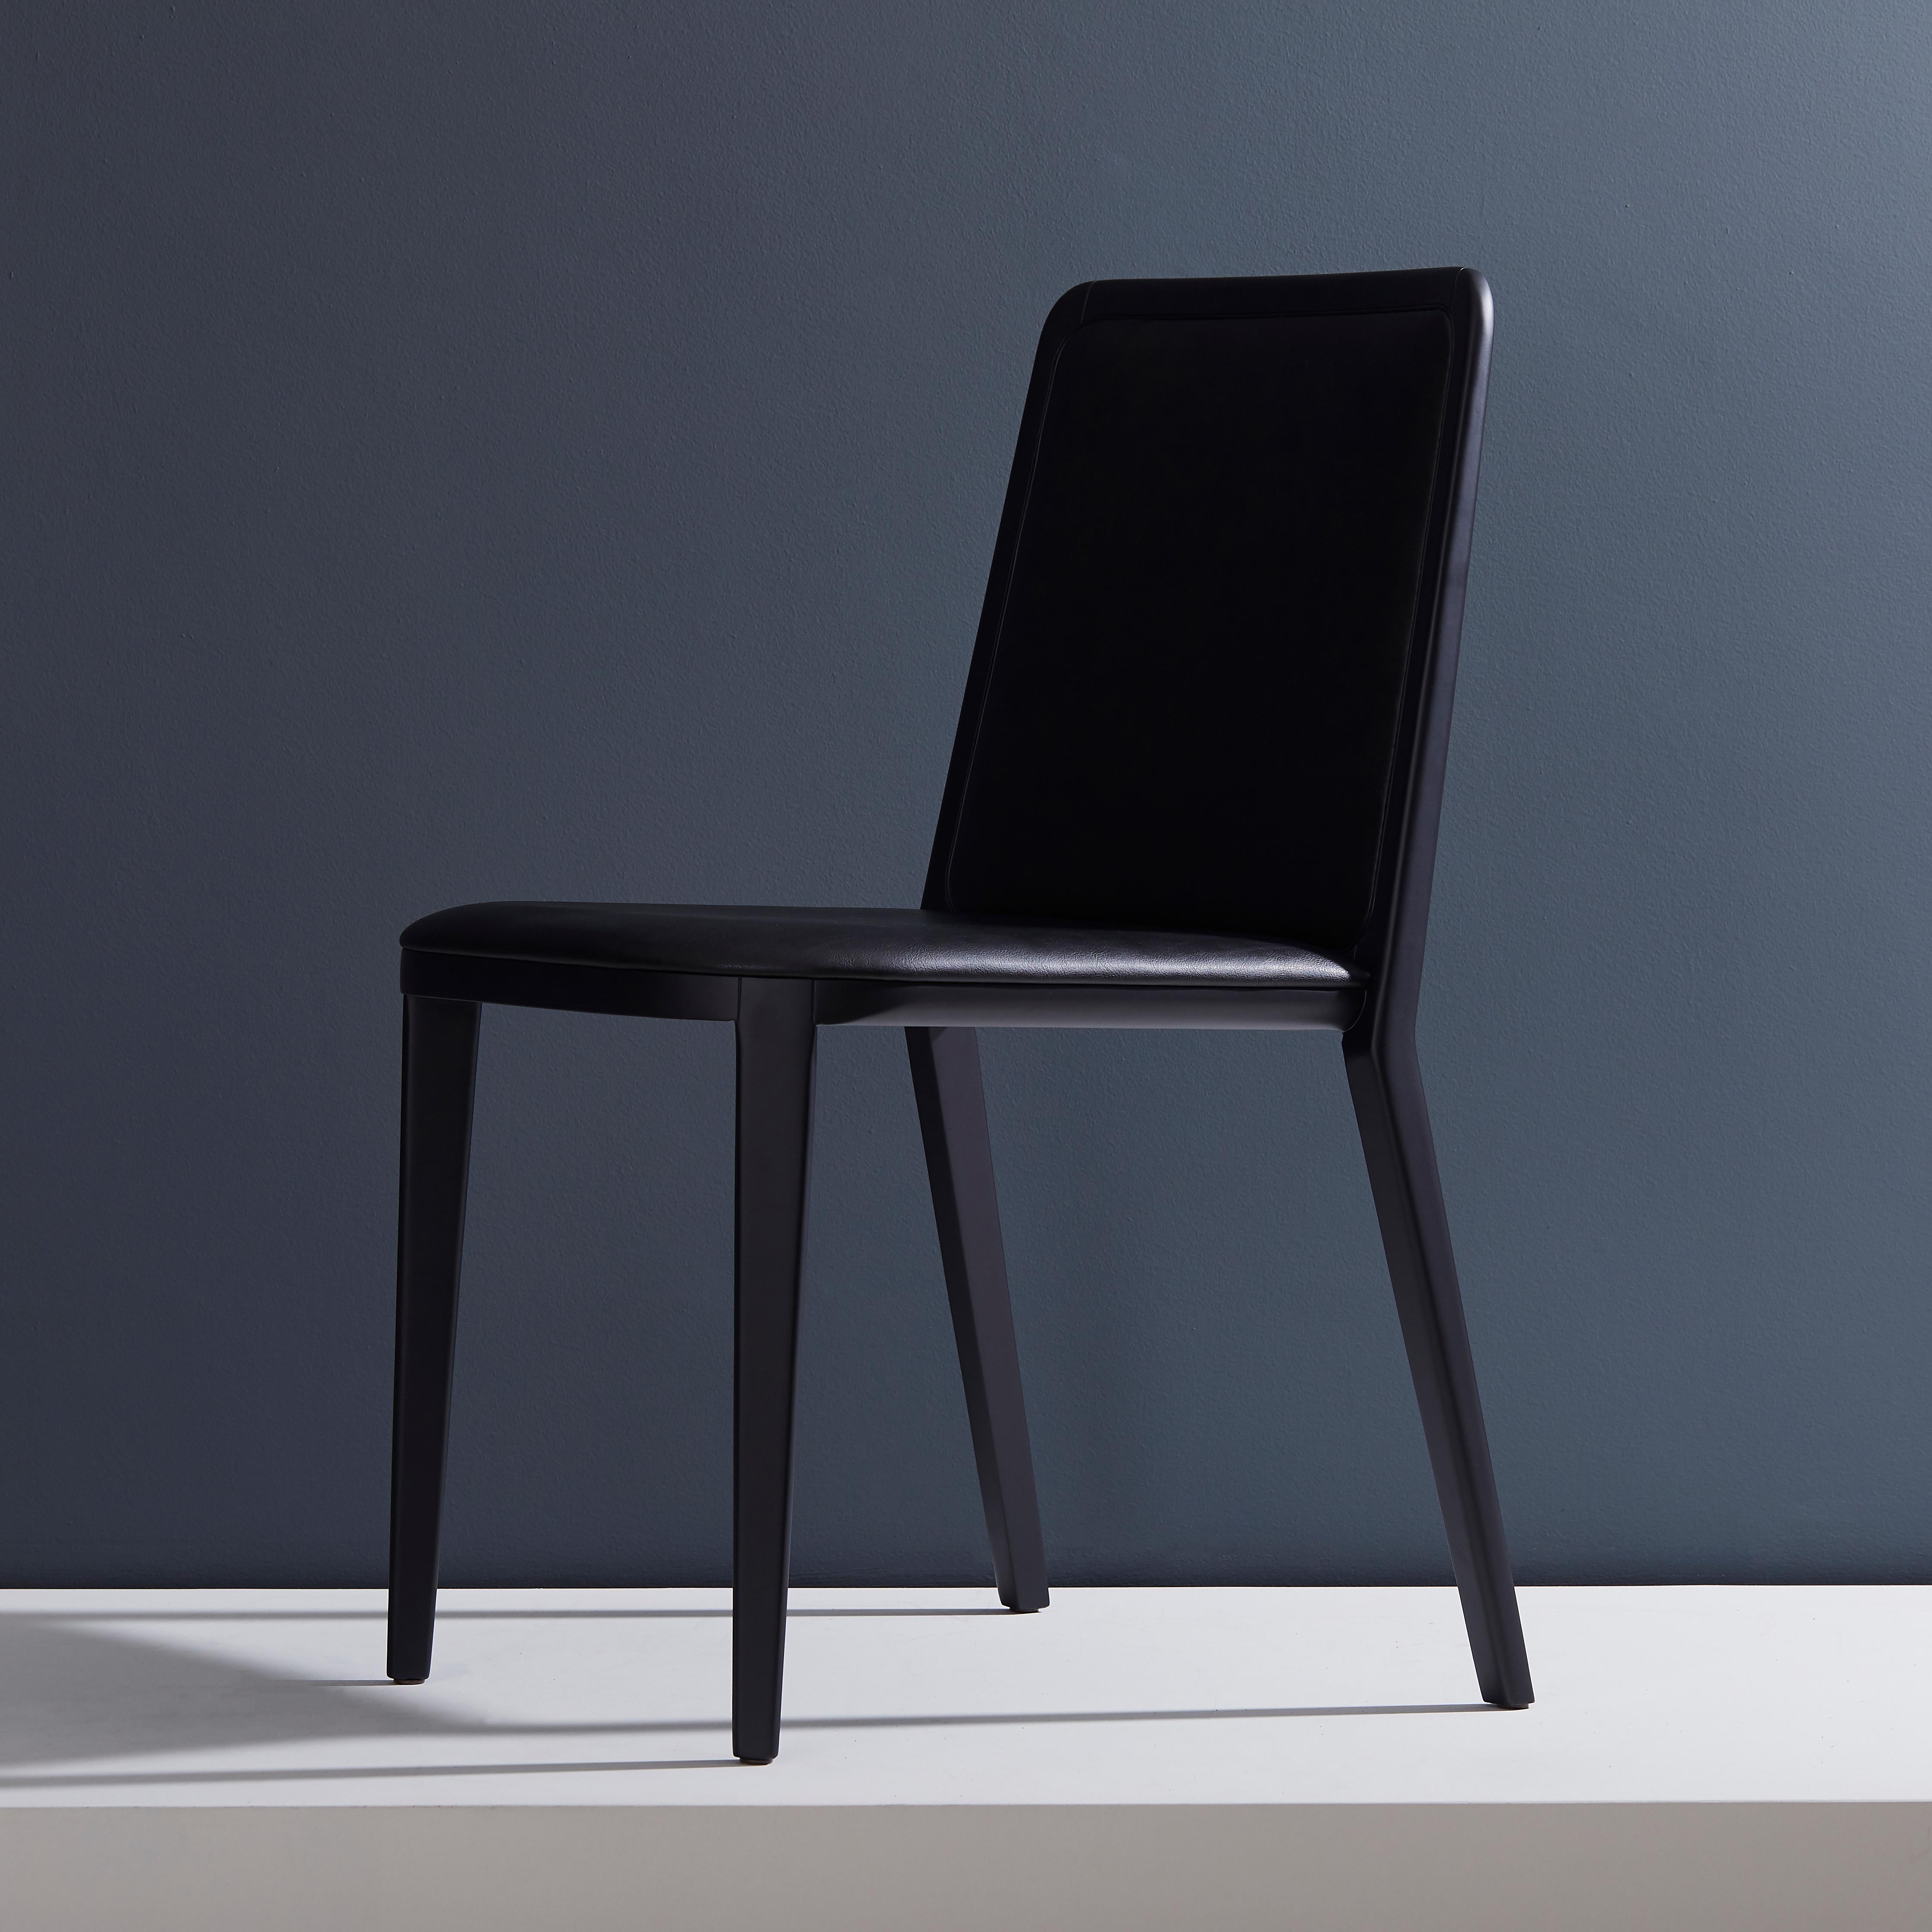 Moderne Chaise en bois massif de style minimaliste, siège en cuir, panneau arrière tapissé en vente